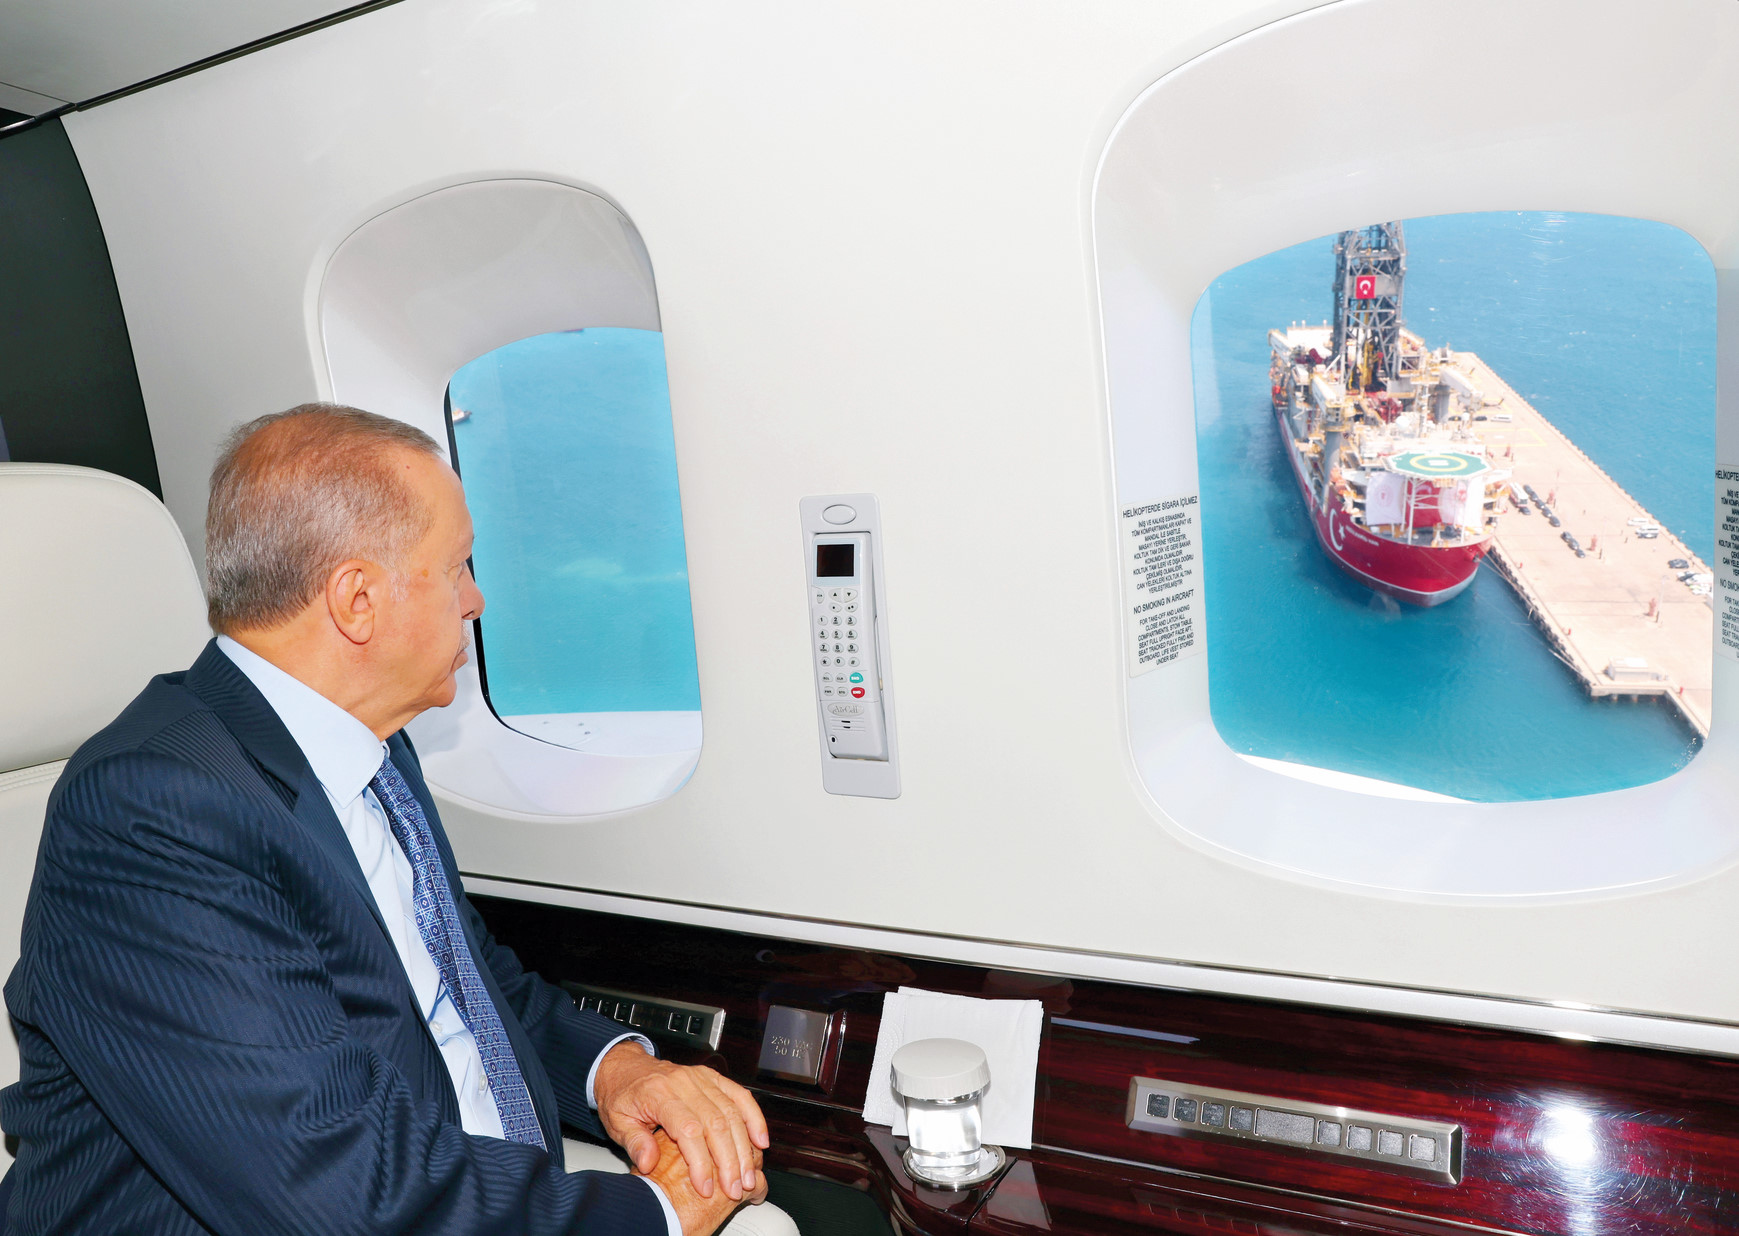 Cumhurbaşkanı Erdoğan, Türkiye’nin hidrokarbon arama çalışmalarına katılacak Abdülhamid Han ‘ı havadan inceledi. Helikopterle gemiye inen Erdoğan, daha sonra yetkililerden bilgi aldı.